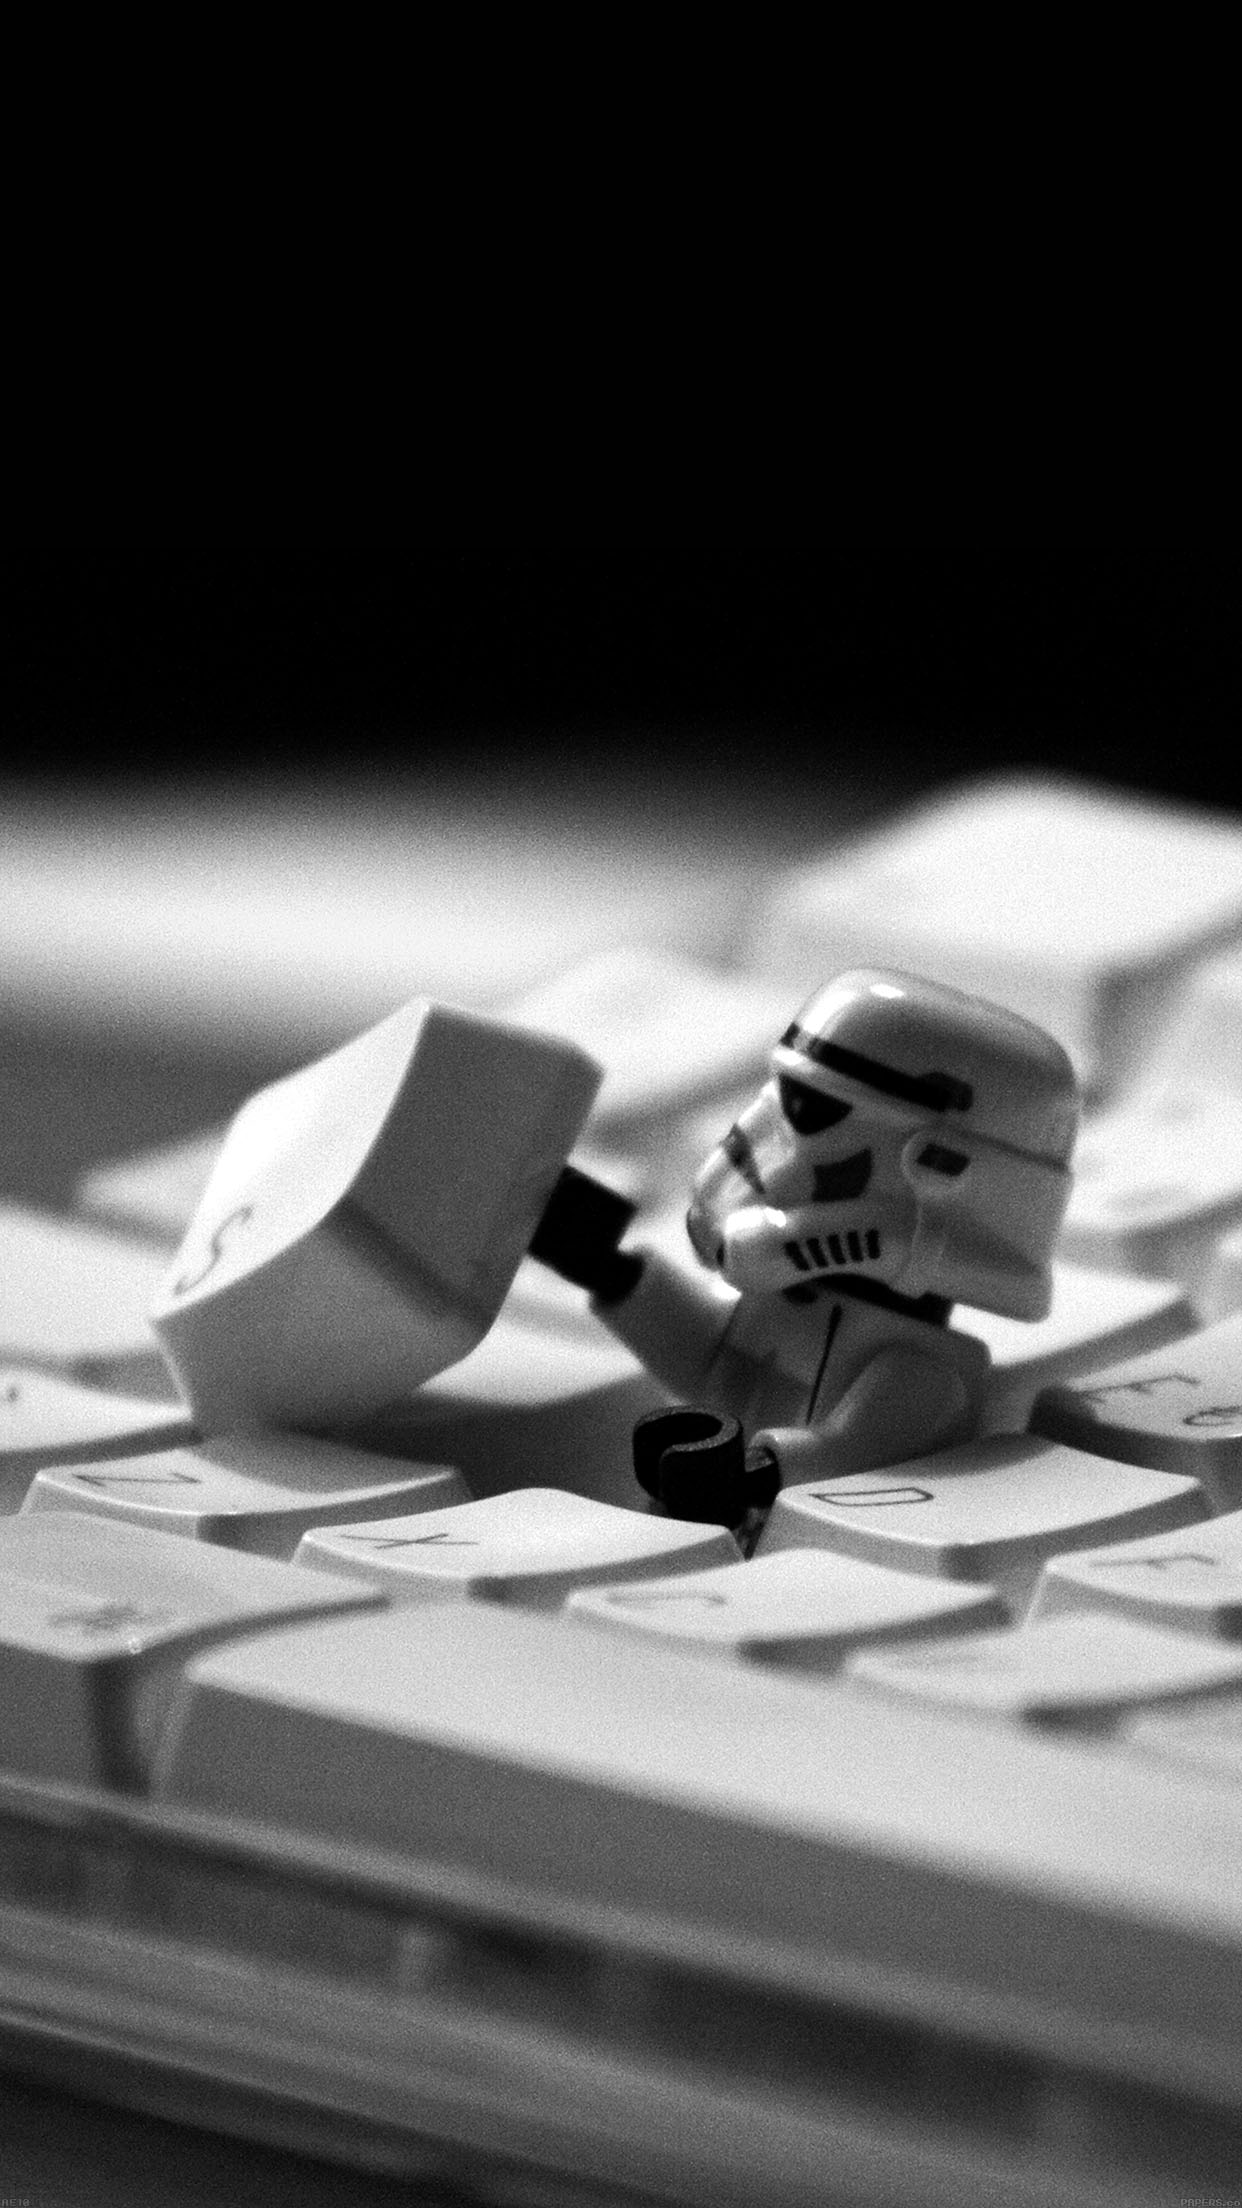 Storm Trooper Starwars Keyboard Film iPhone6 Plus Wallpaper Jpg